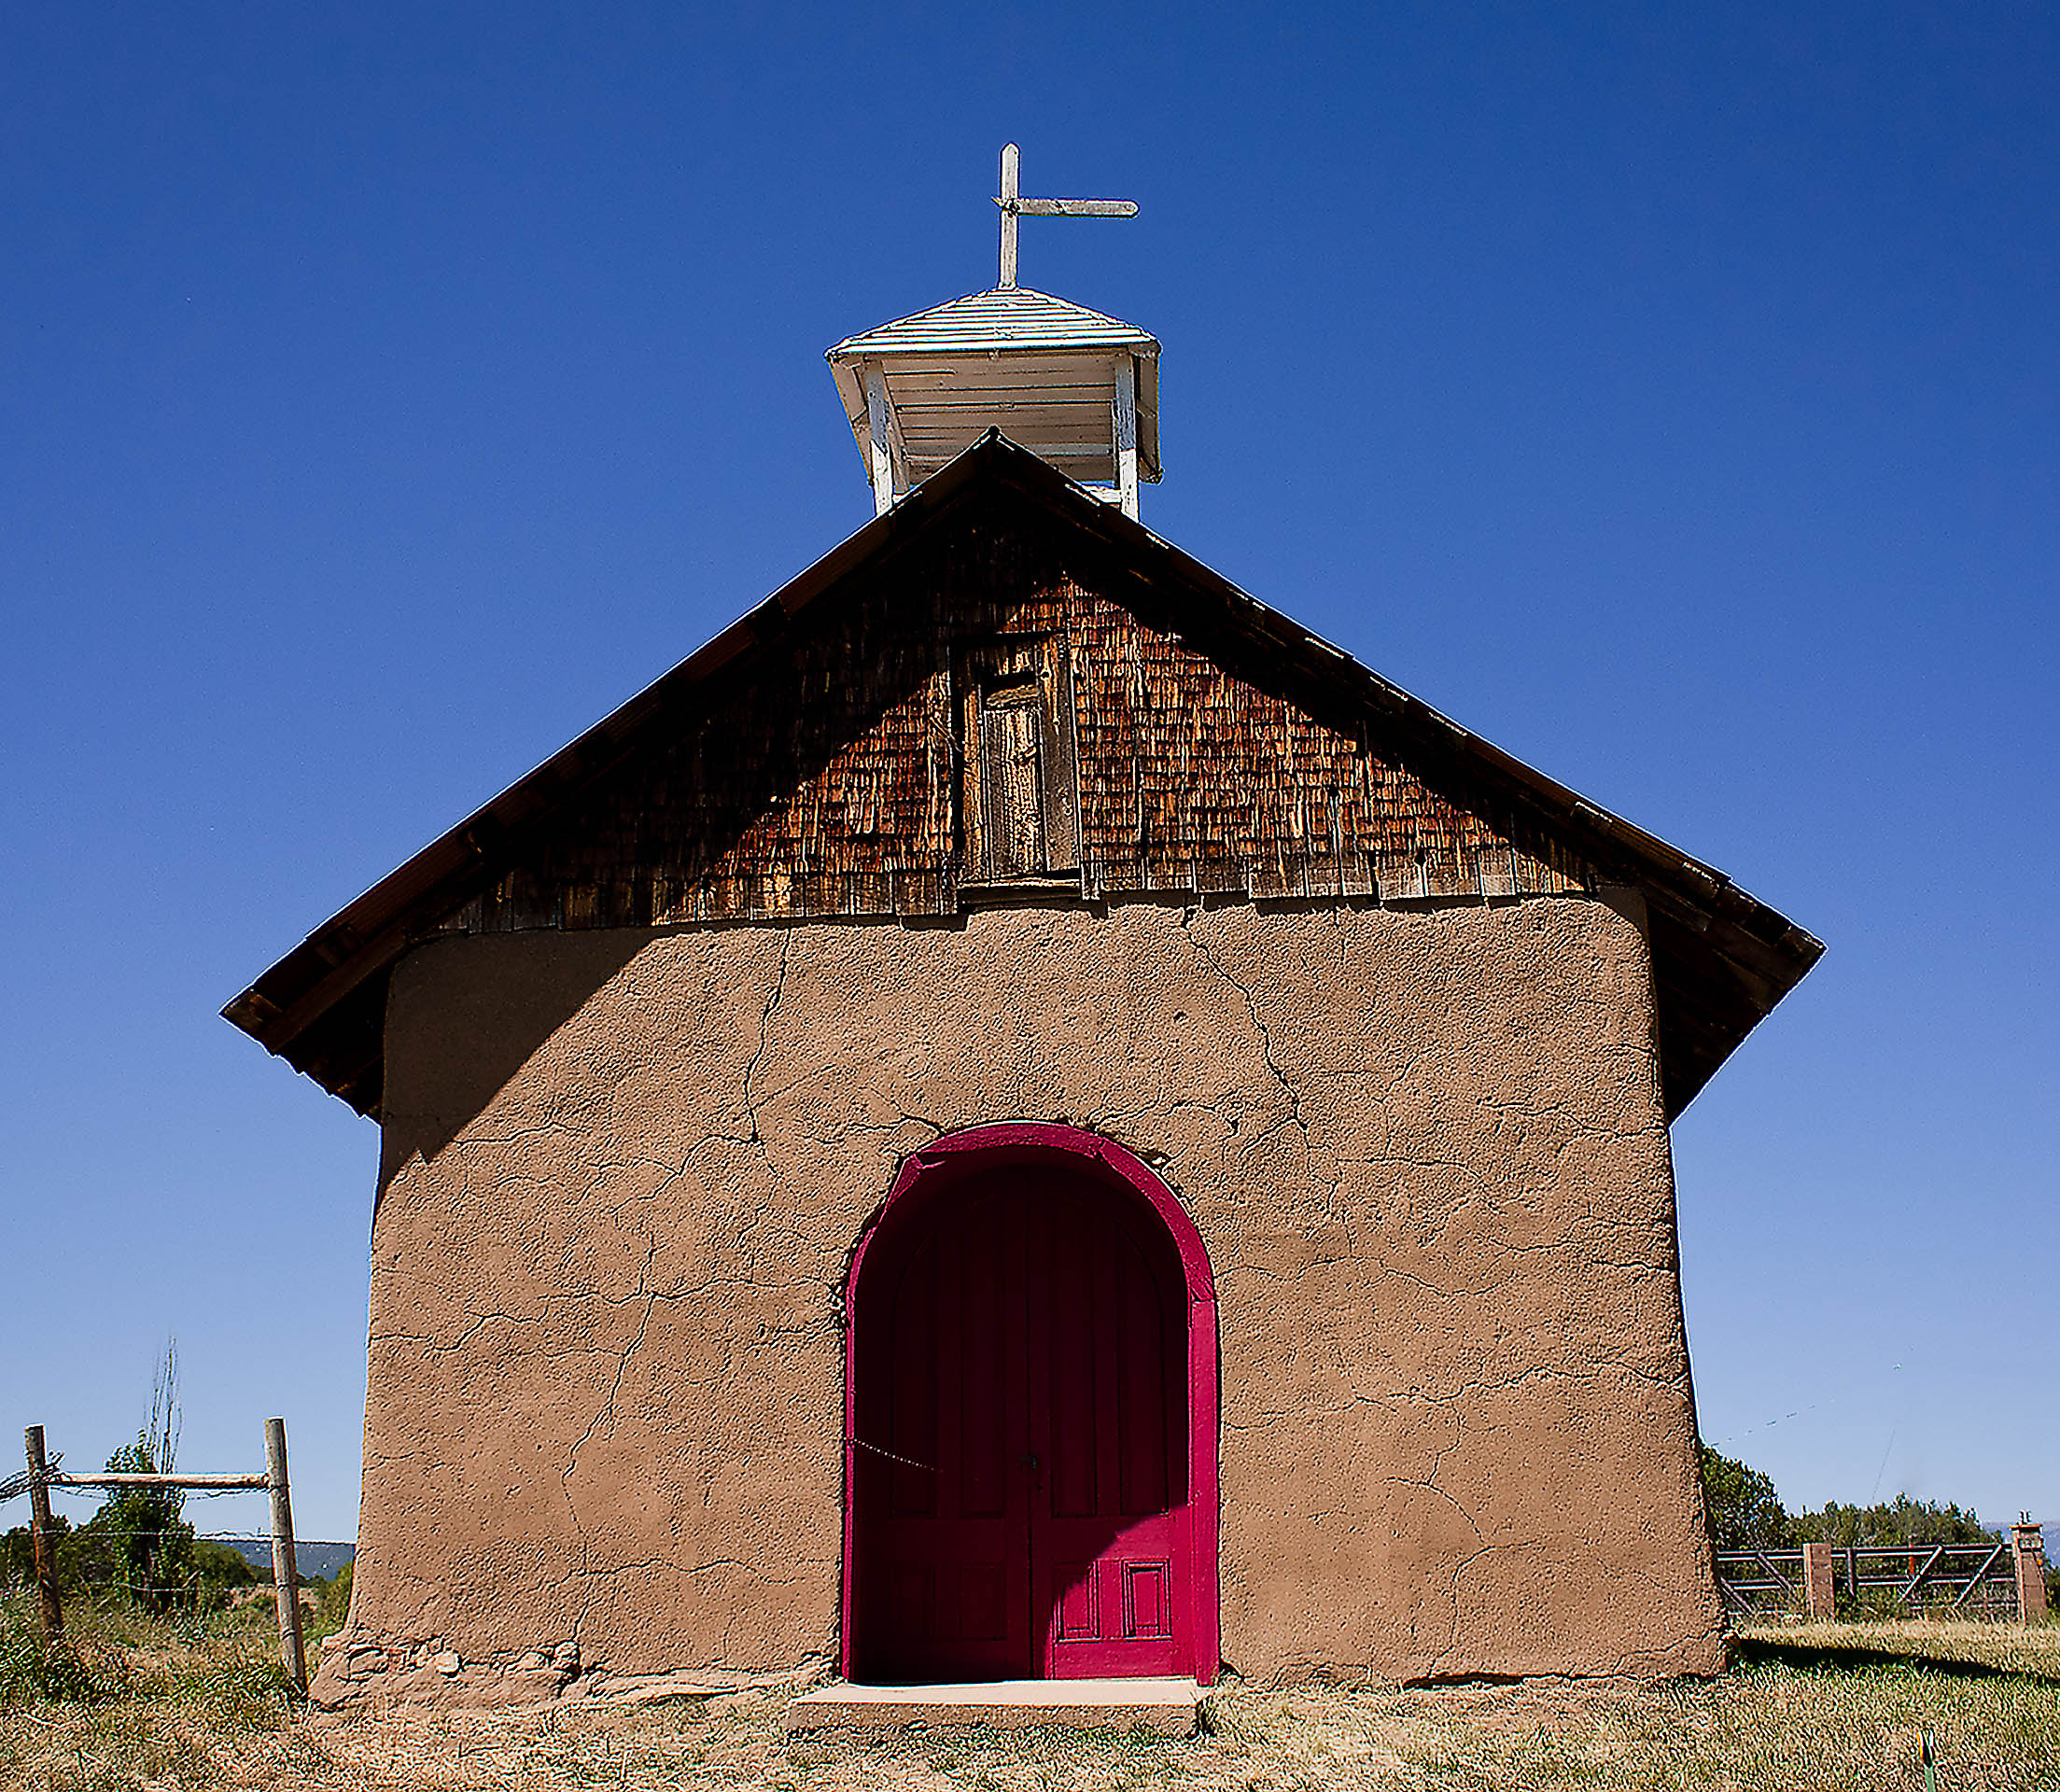 Chapel Near Springer, NM